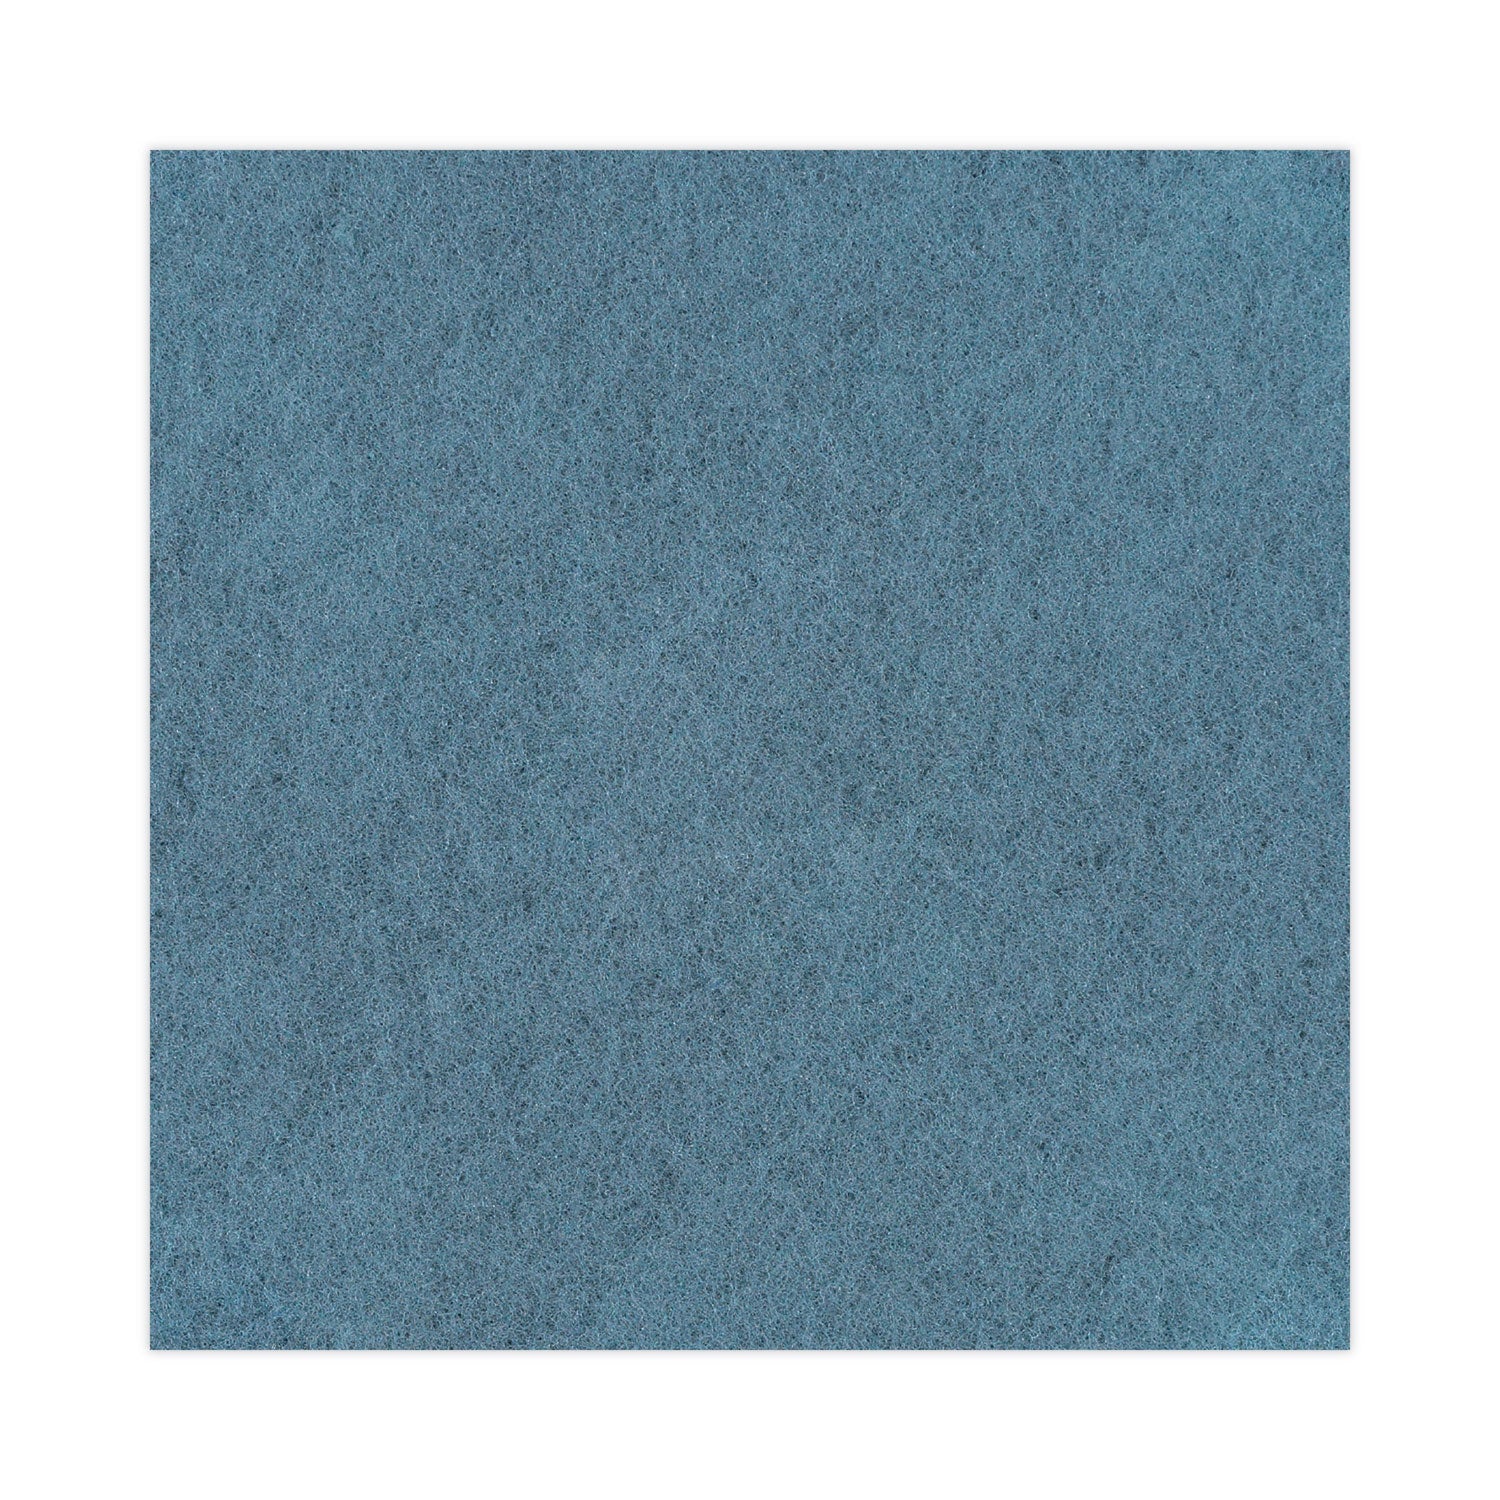 burnishing-floor-pads-20-diameter-aqua-5-carton_bwk4020aqu - 6